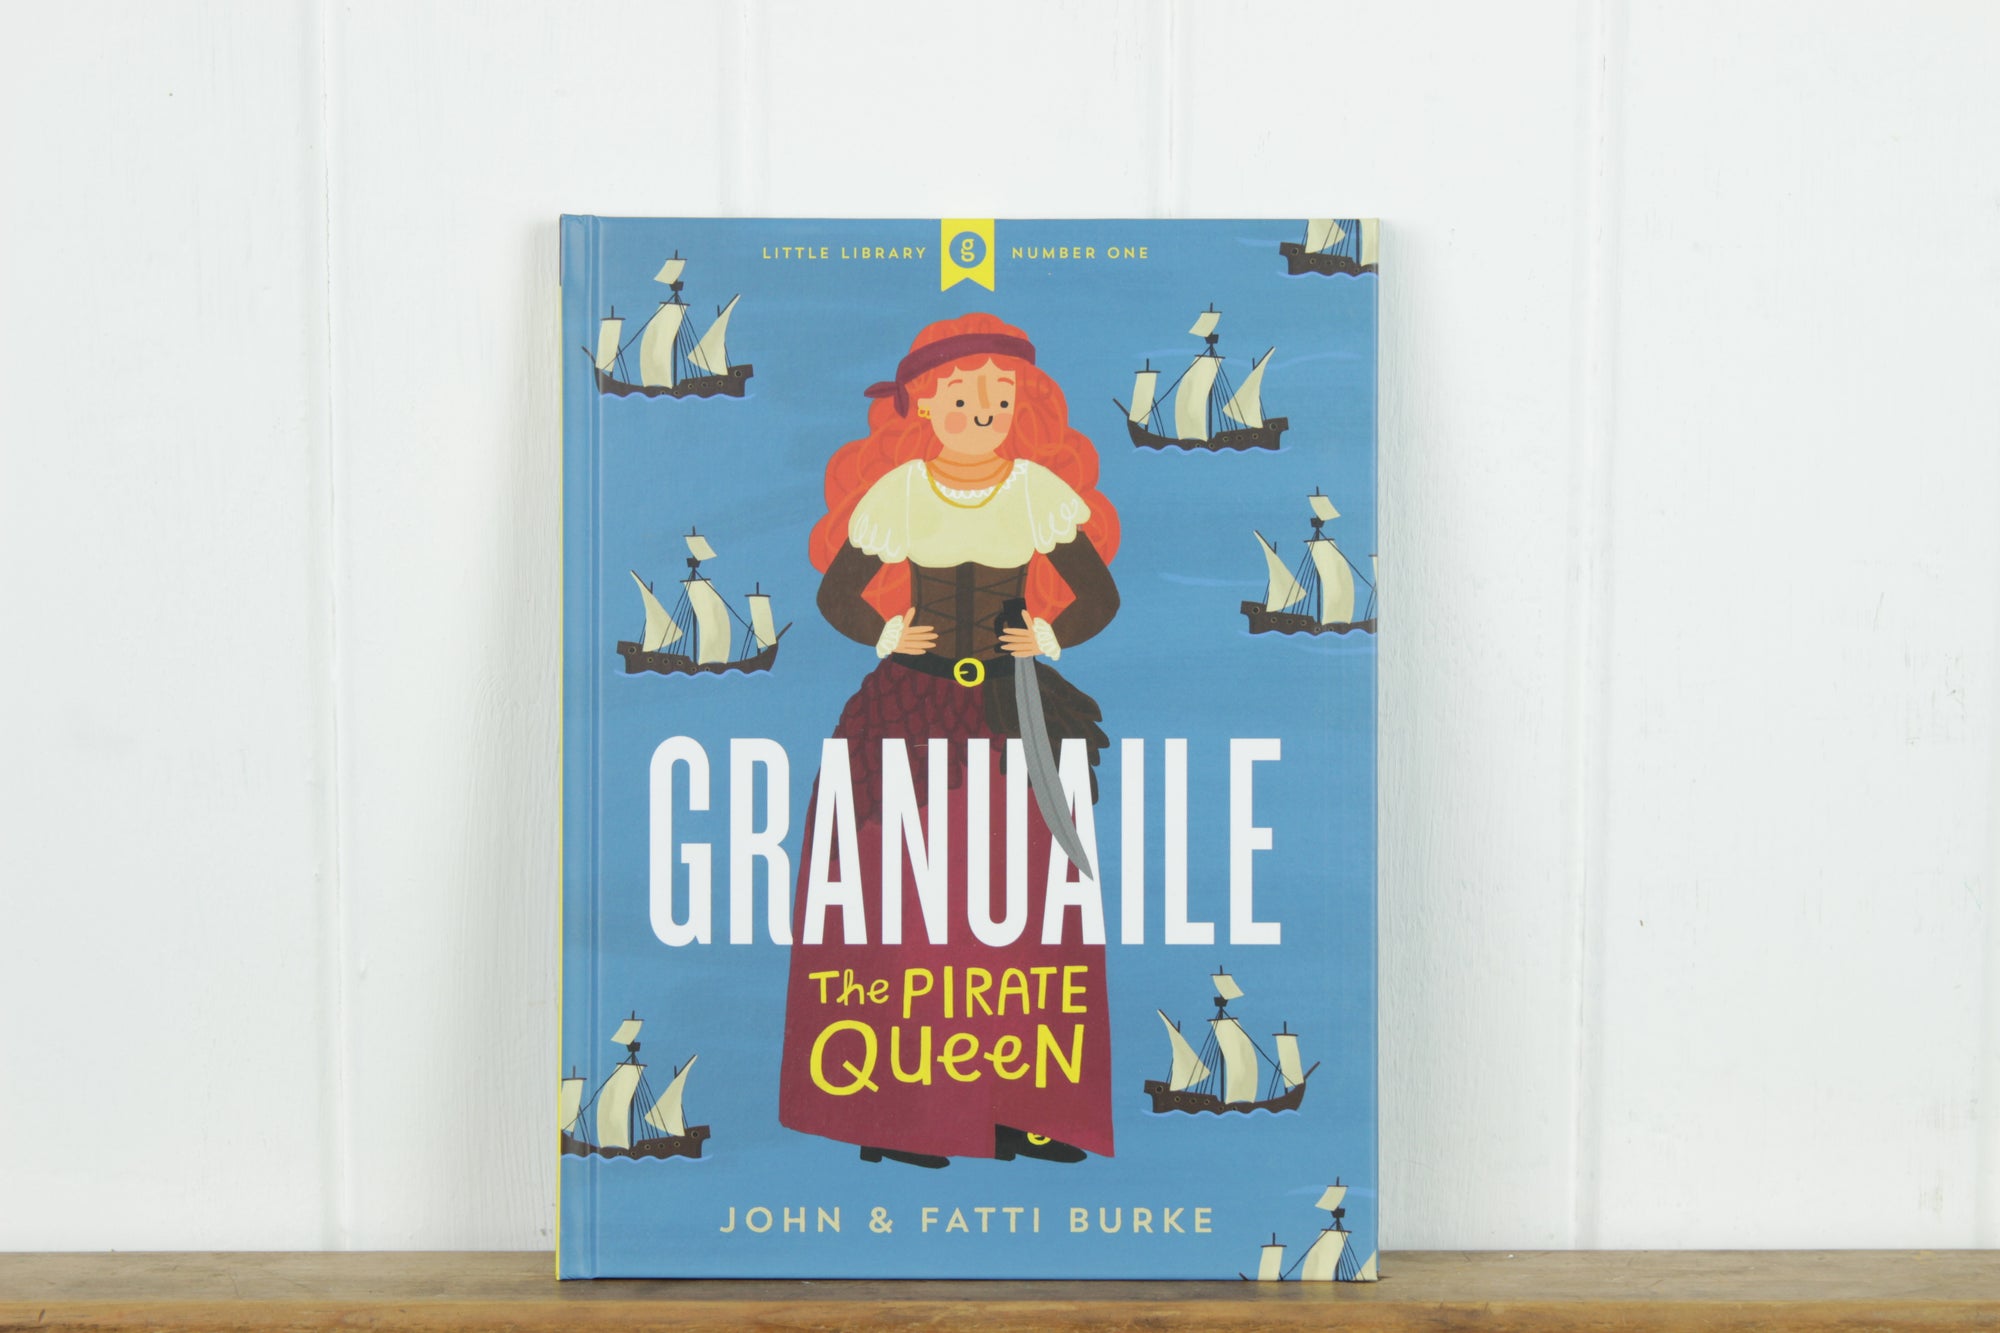 Granuaile, The Pirate Queen, John & Fatti Burke